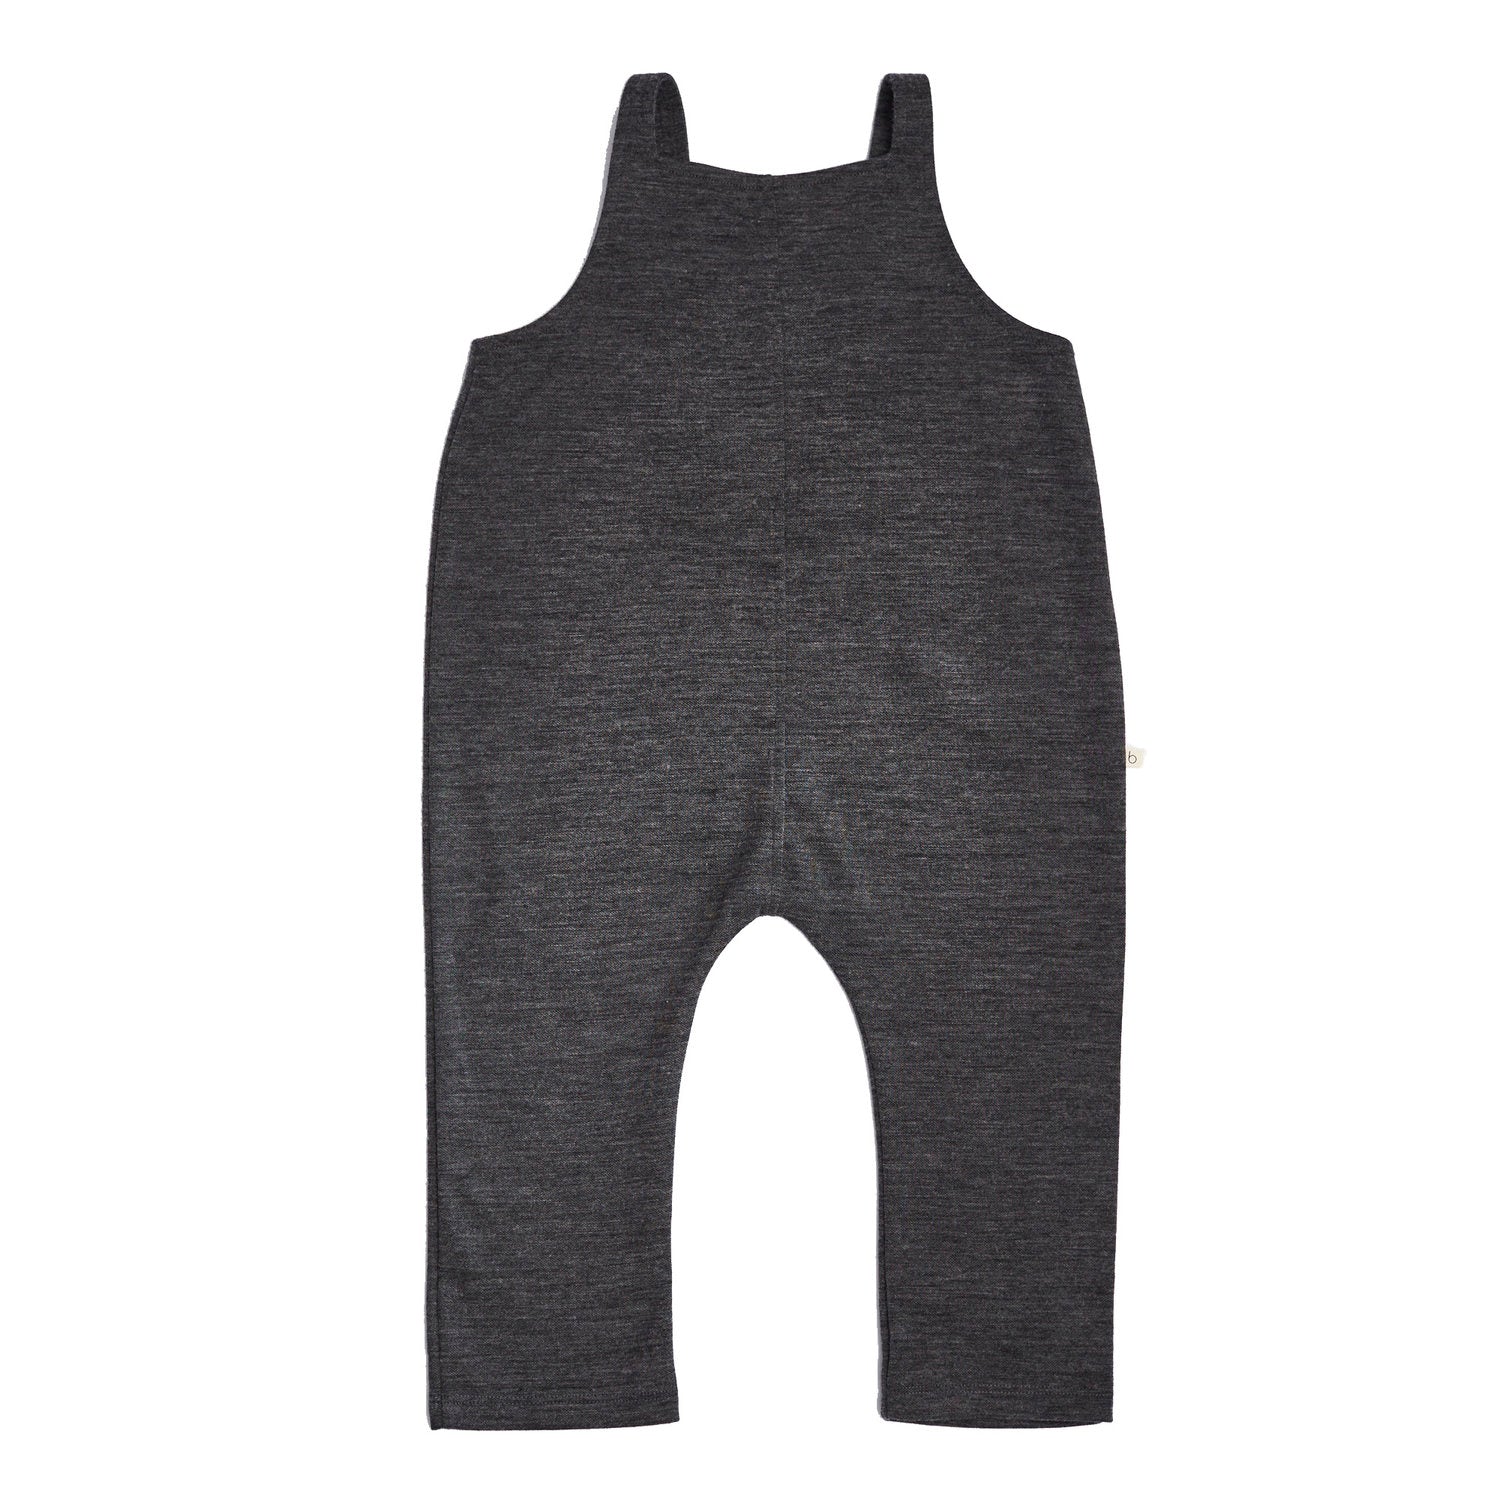 Bacabuche Merino Wool Baby Overall in Charcoal | BIEN BIEN